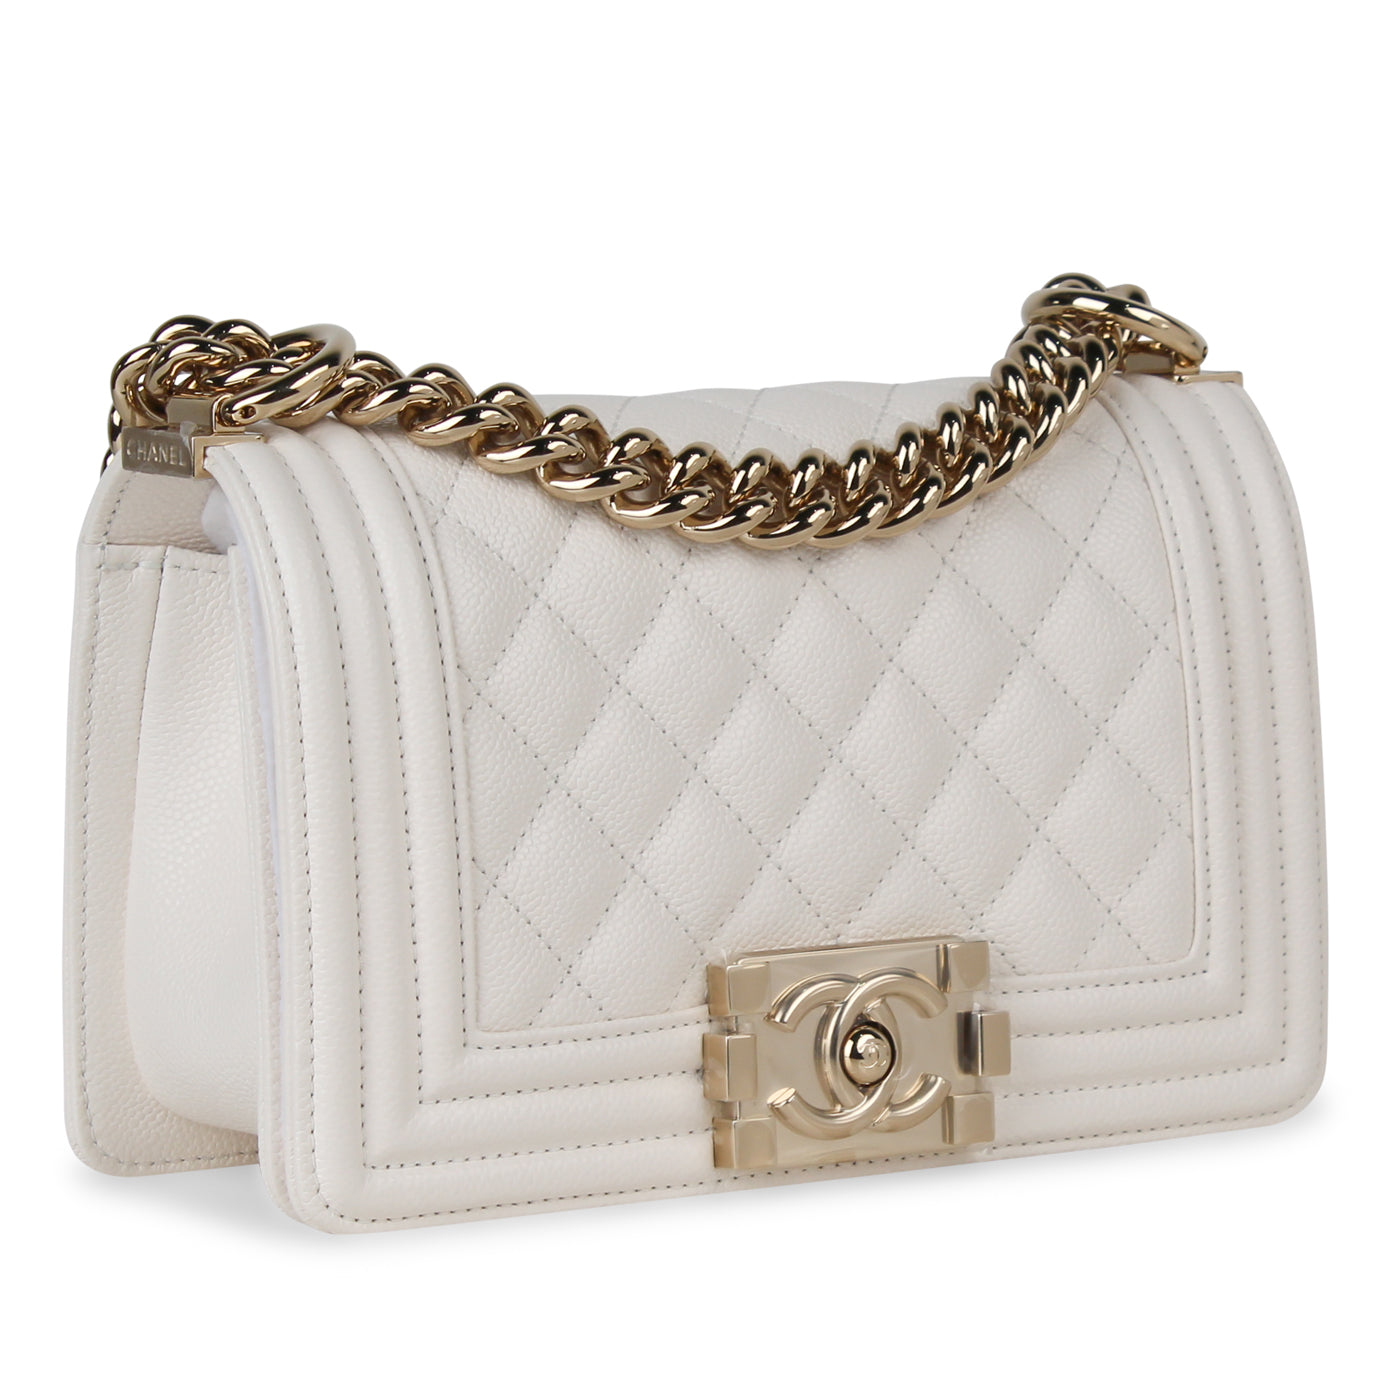 Chanel 22 Handbag White  Nice Bag